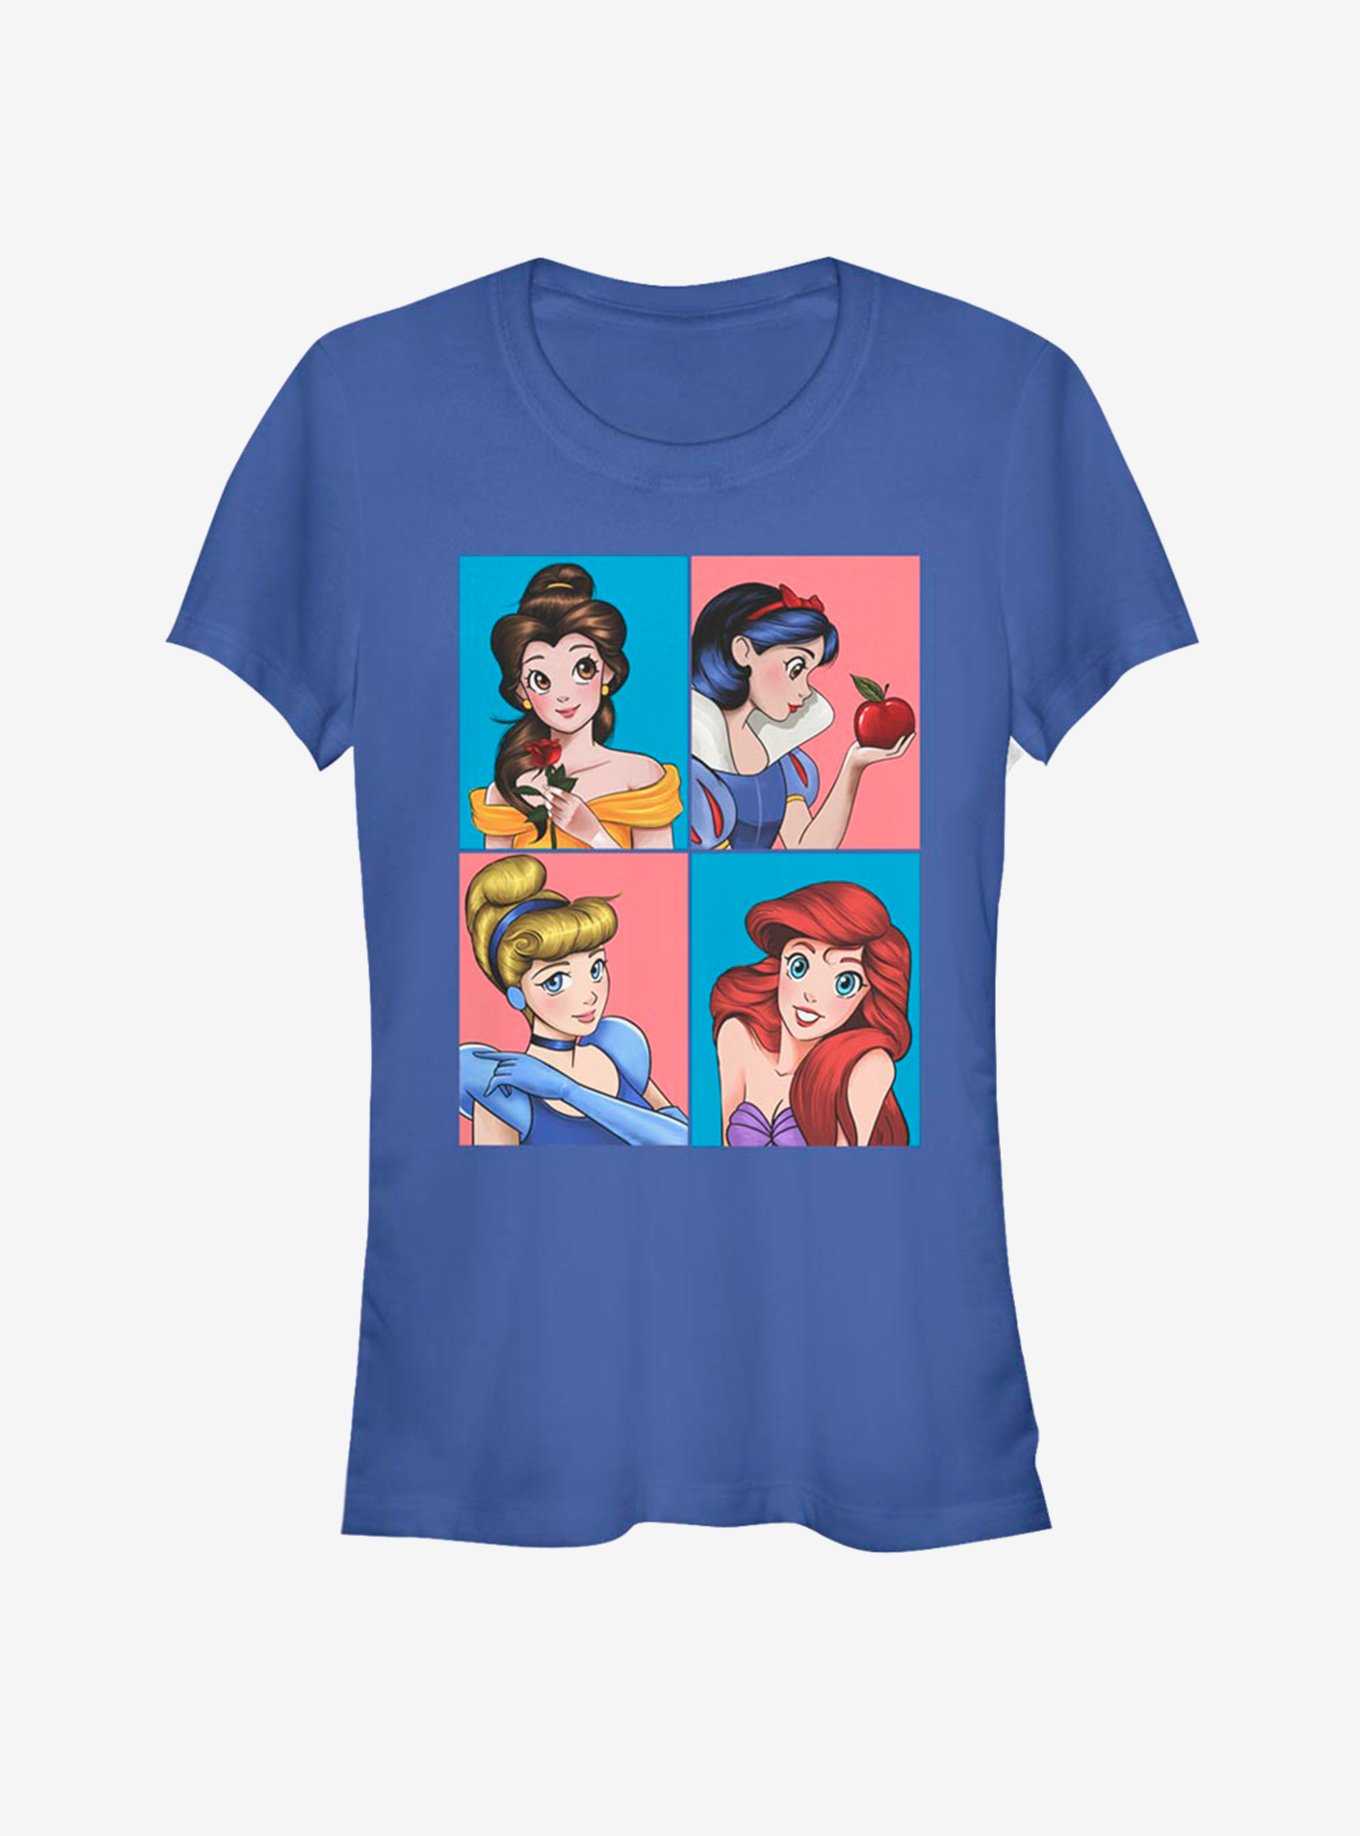 Disney Princess Classic Princess Girls T-Shirt, , hi-res